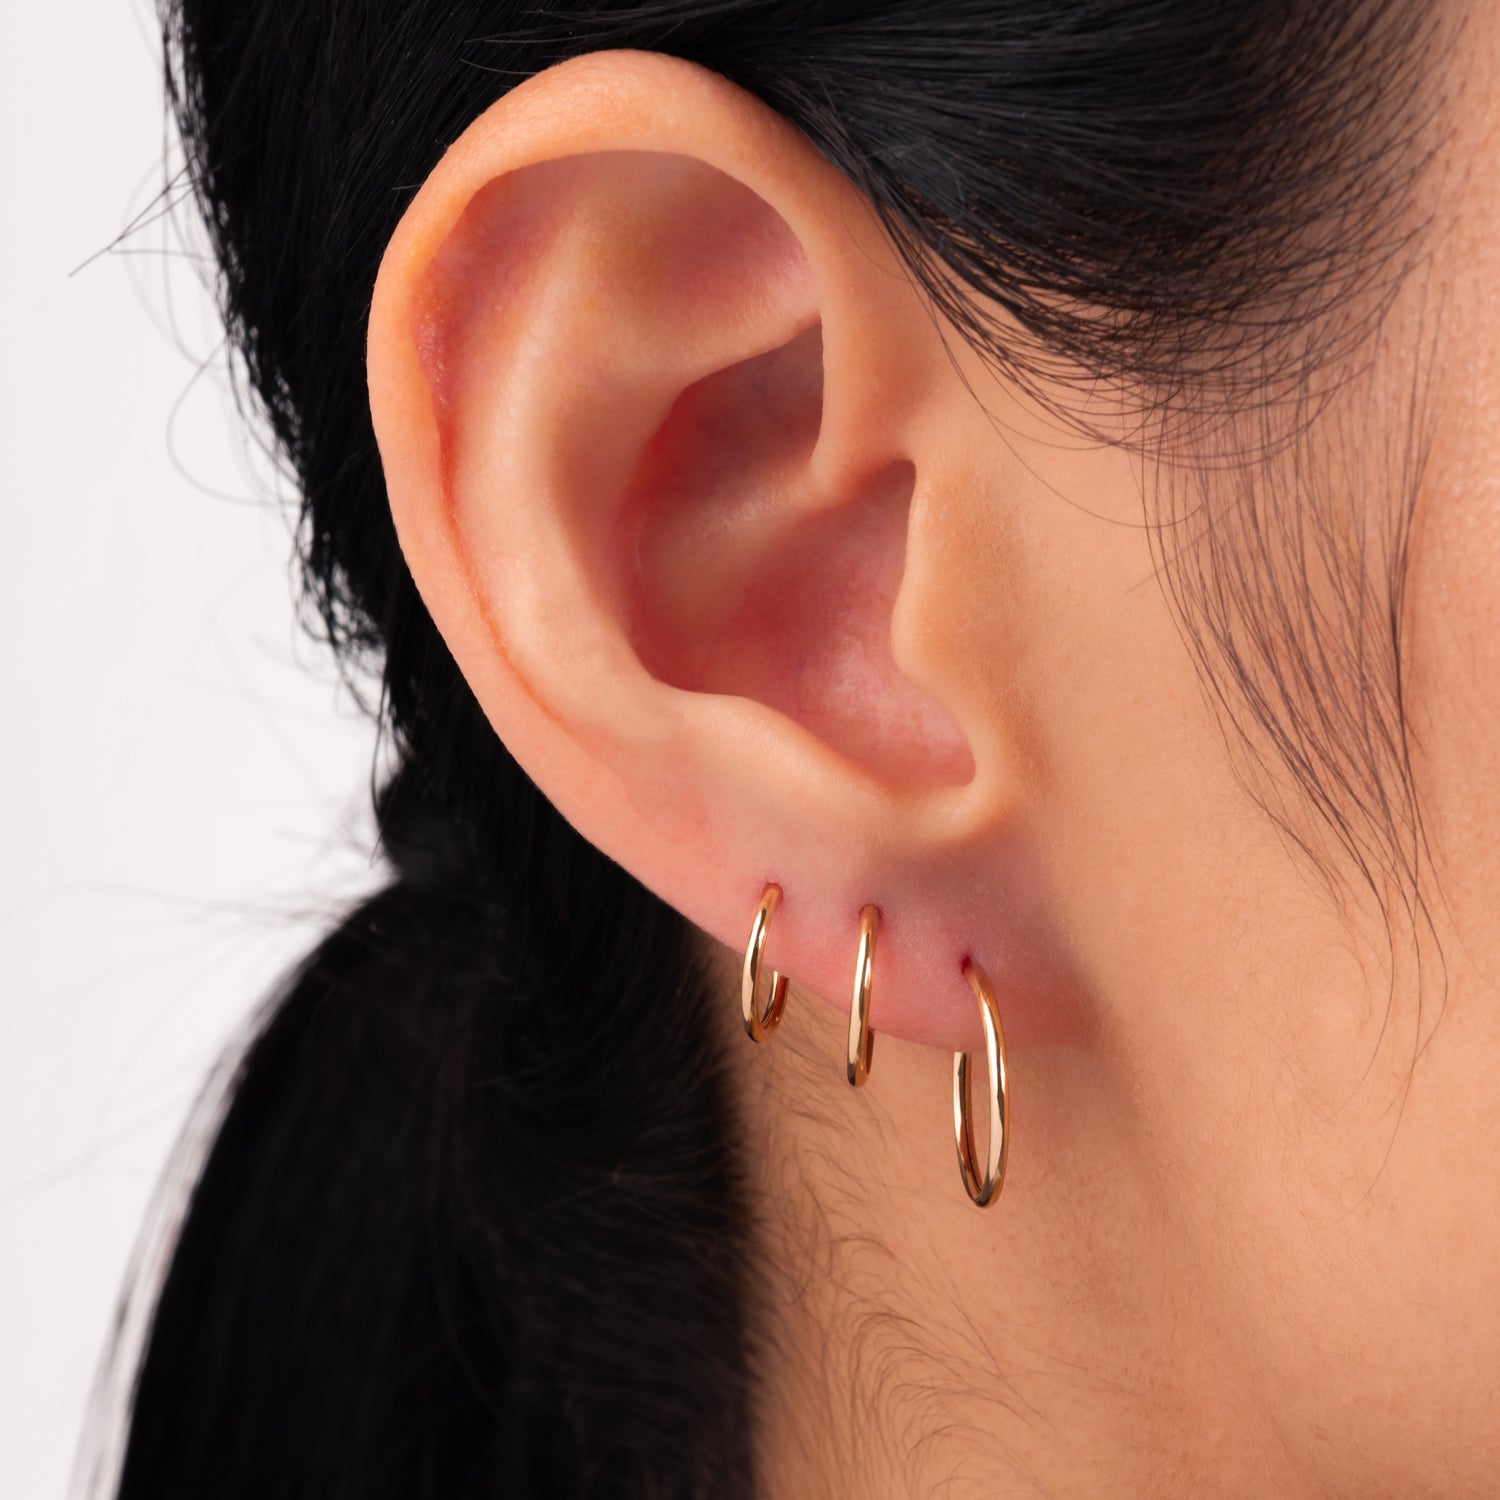 J&CO Jewellery 14K Solid Gold Endless Little Hoop Earrings